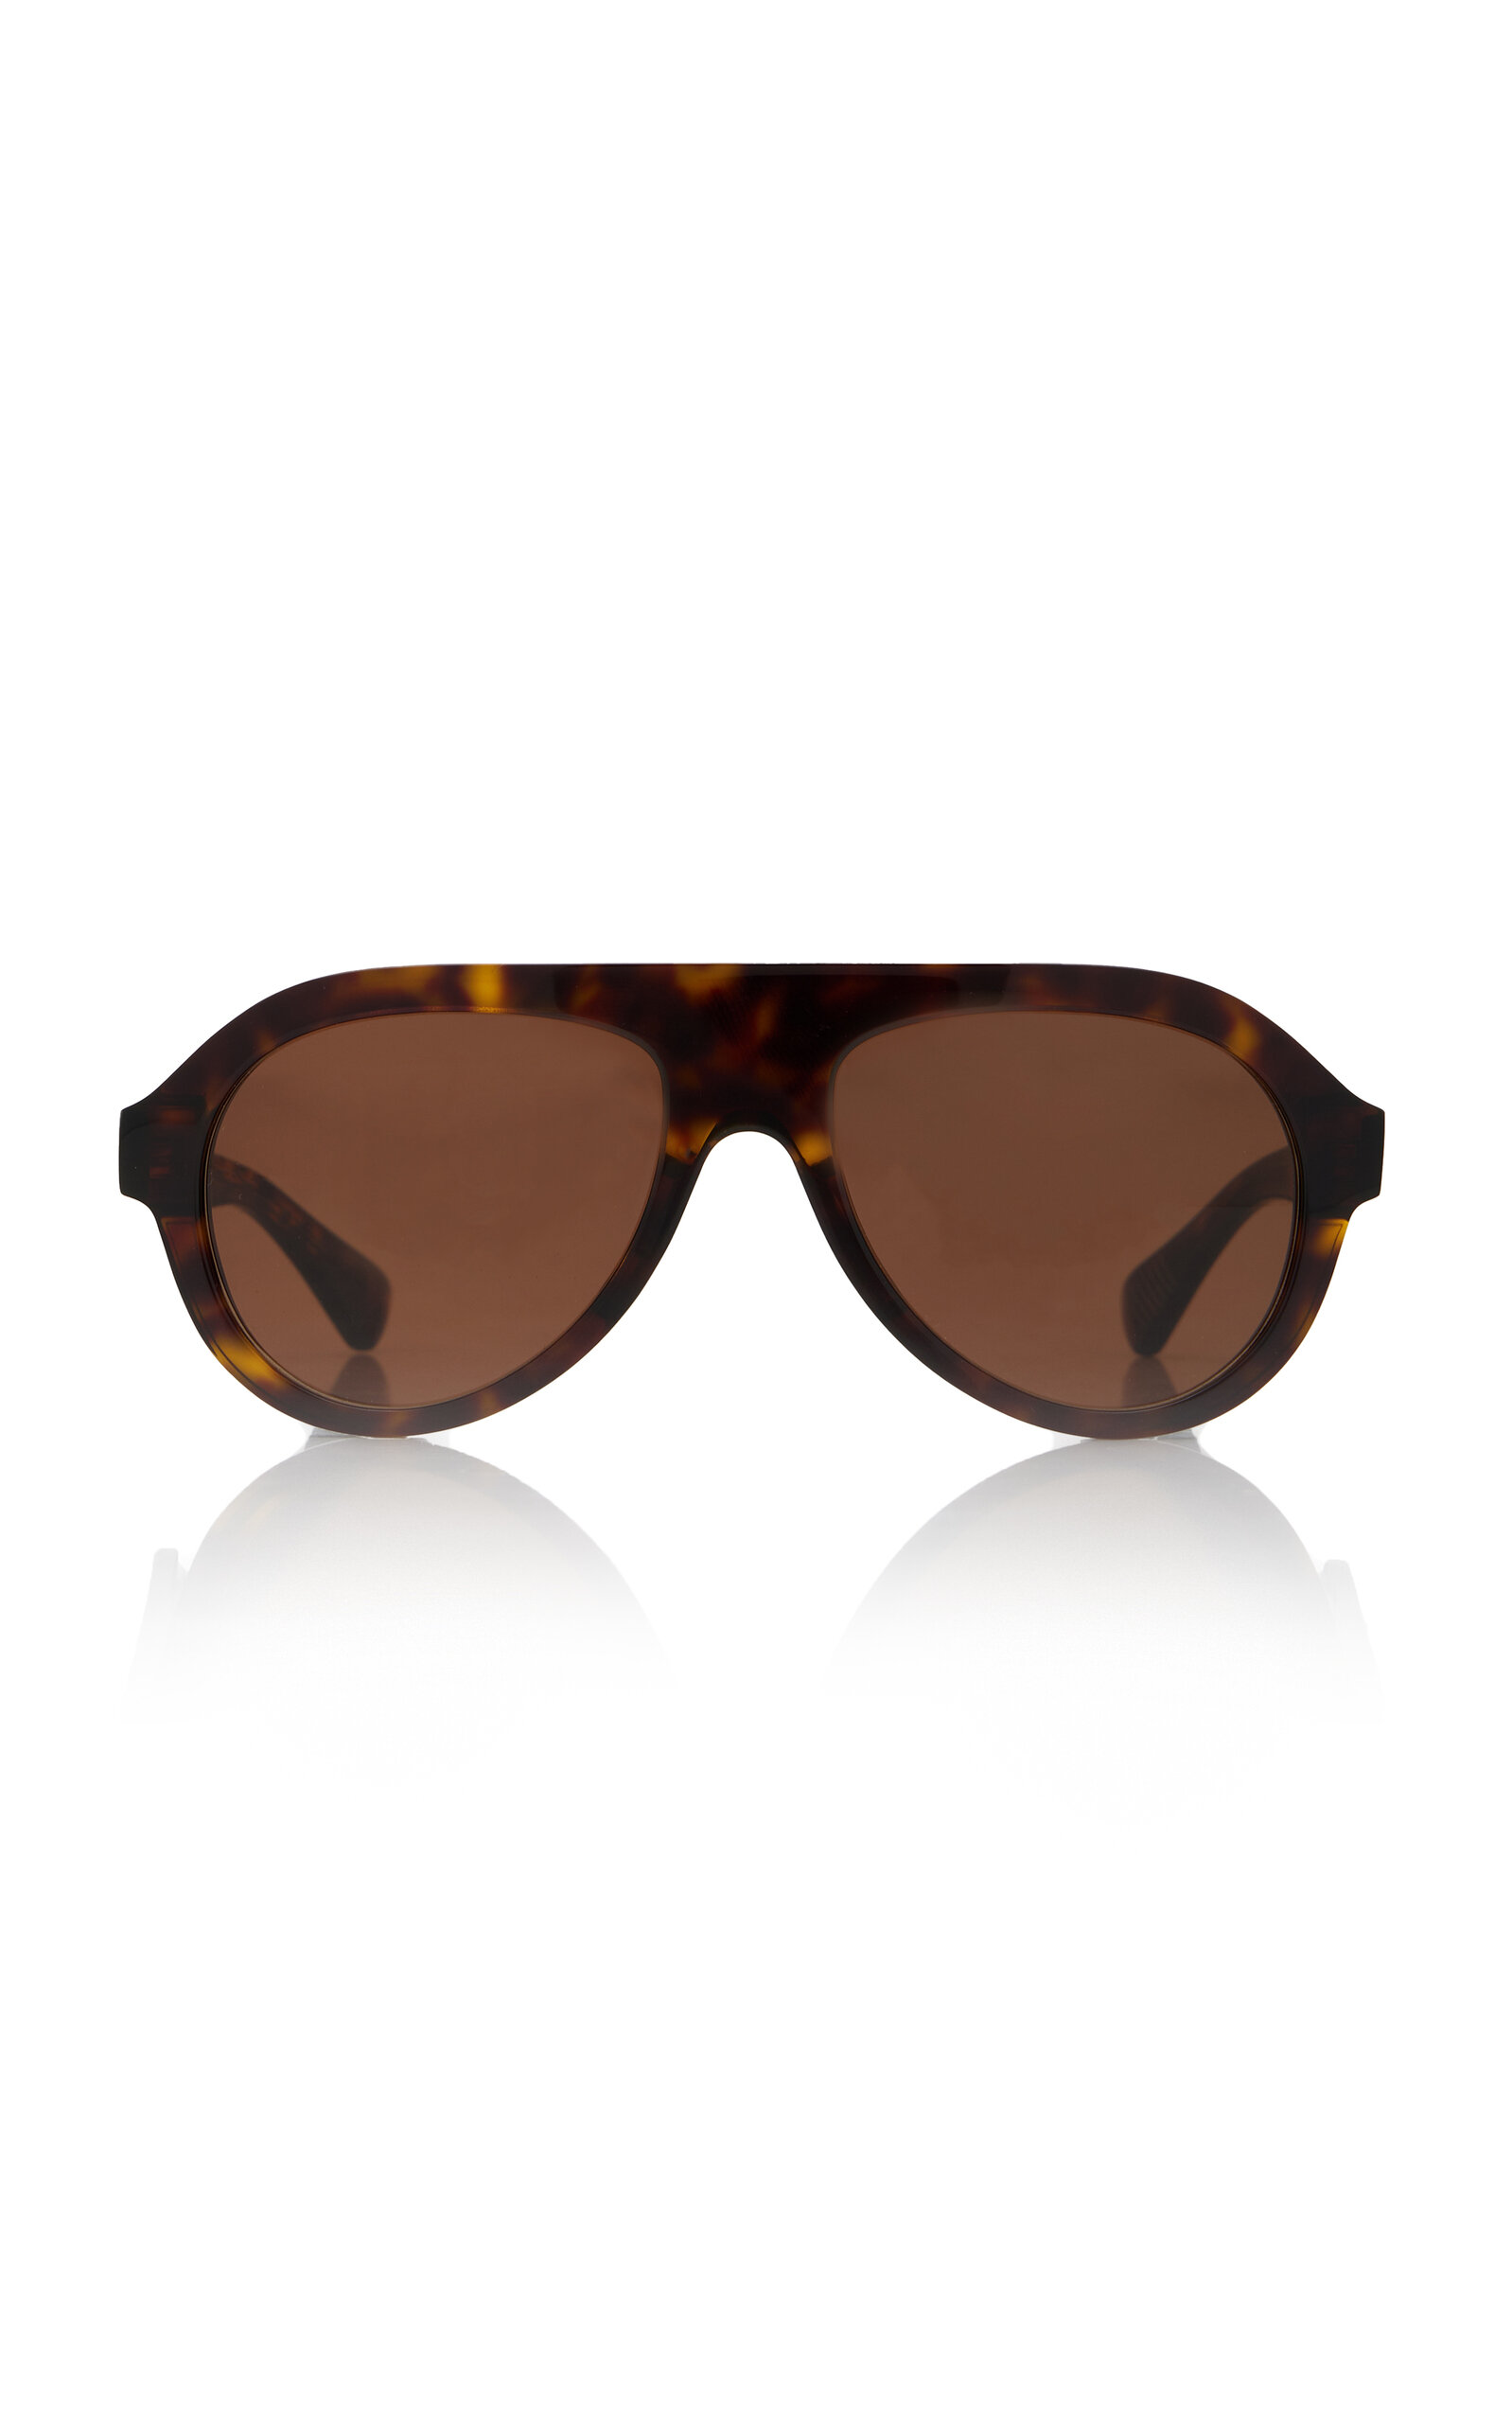 Bottega Veneta - Women's Aviator-Frame Acetate Sunglasses - Brown - OS - Moda Operandi